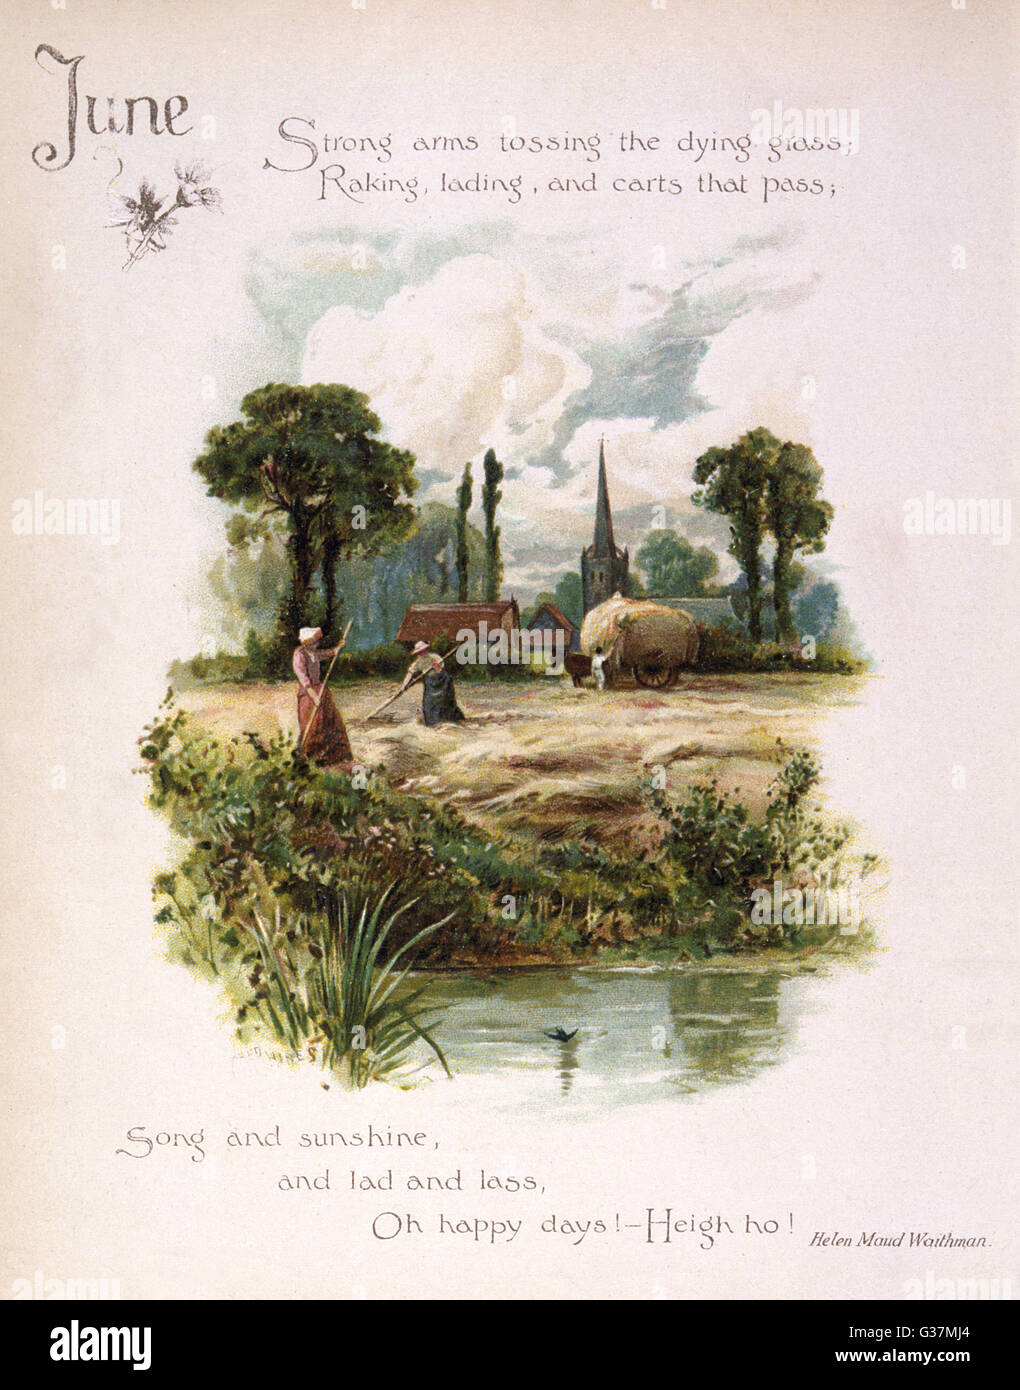 Illustration de livre -- juin, avec une Scène de fenaison. Date : vers 1880 Banque D'Images